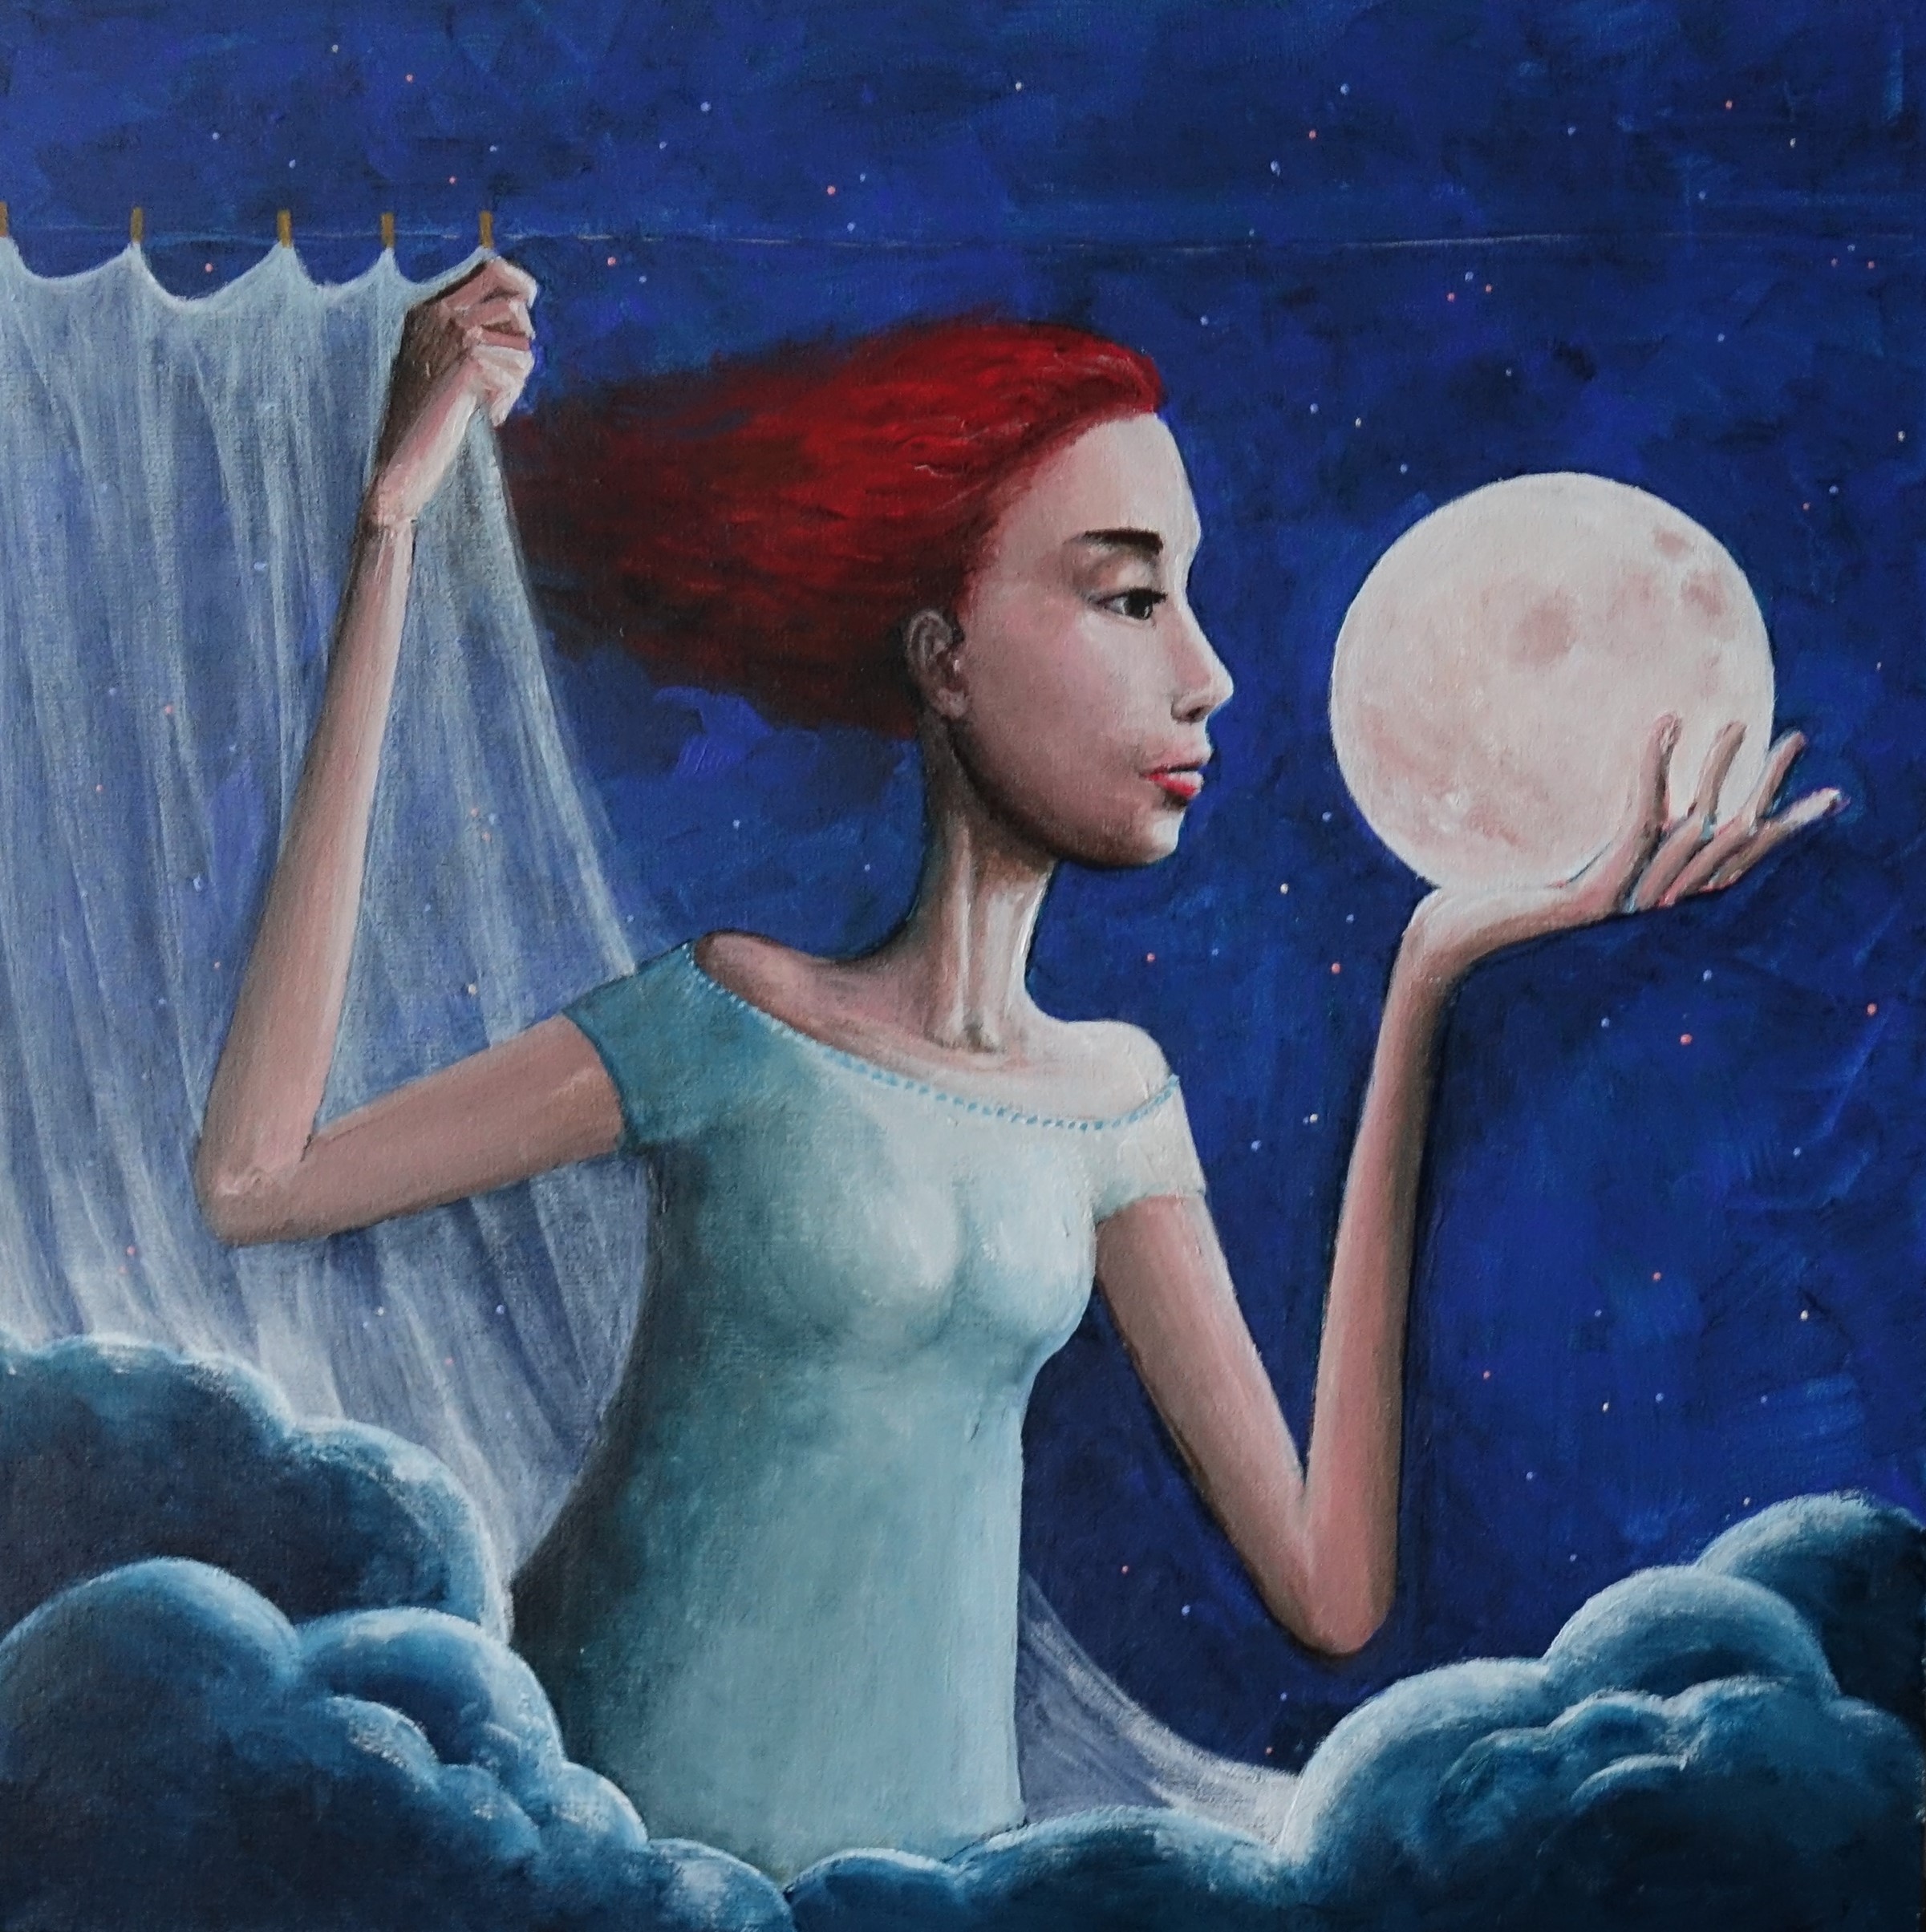 Kobieta w jednej ręce trzyma kulę księżyca, drugą zaciąga białą zasłonę